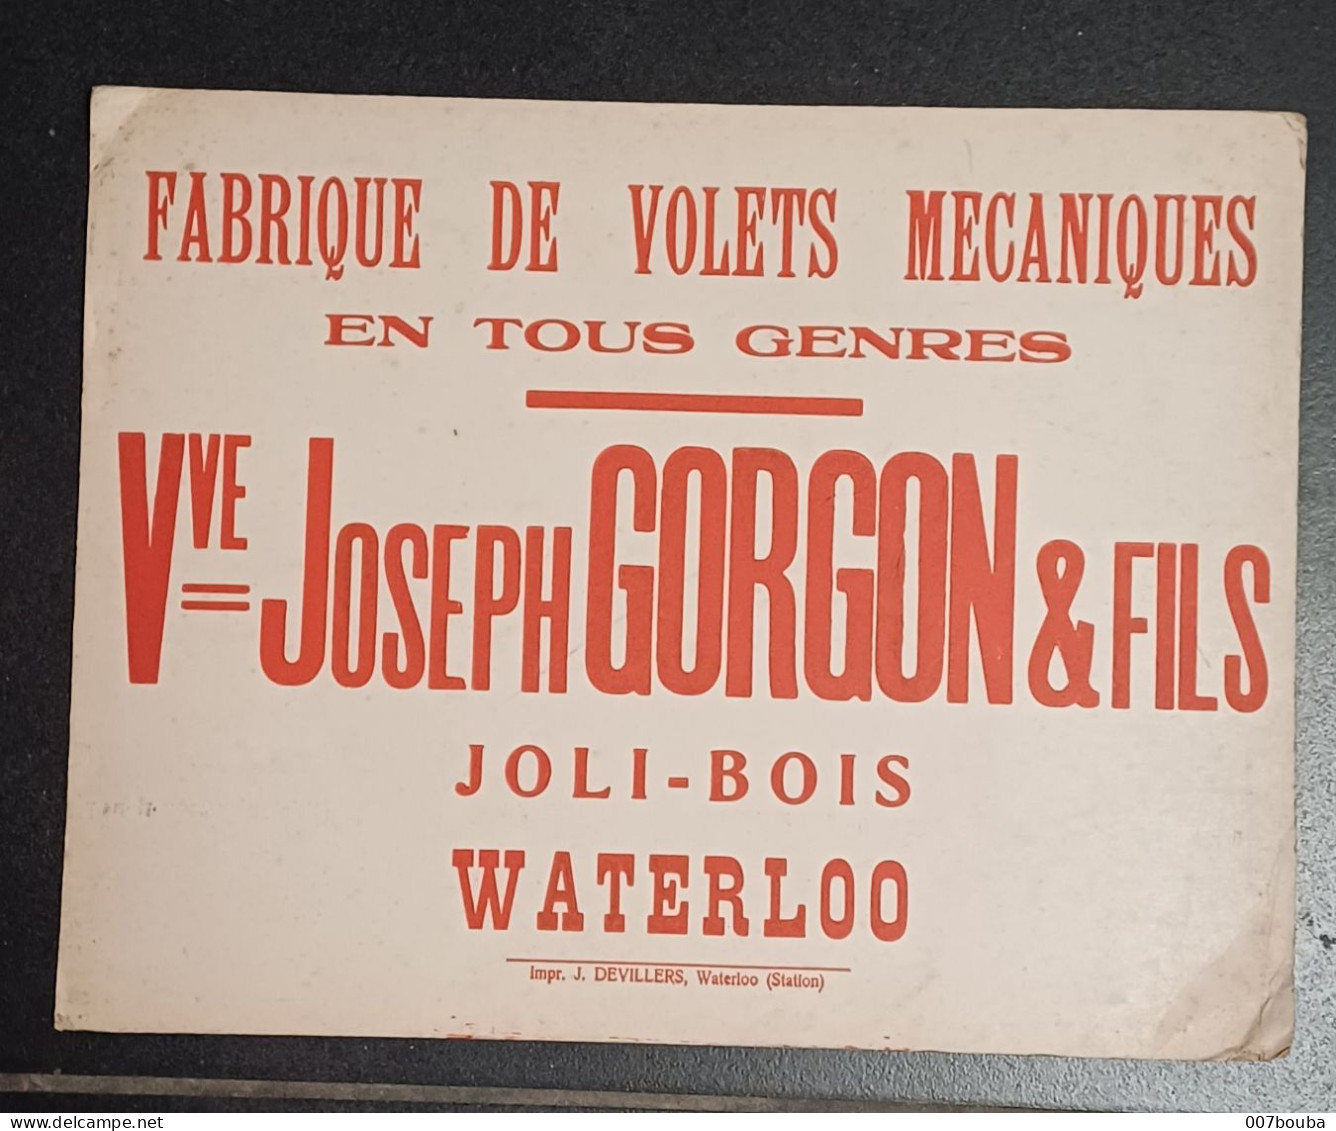 WATERLOO JOLI-BOIS / Vve JOSEPH GORGON & FILS _ FABRIQUE DE VOLETS MÉCANIQUES / FORMAT 30x25cm - Placas De Cartón